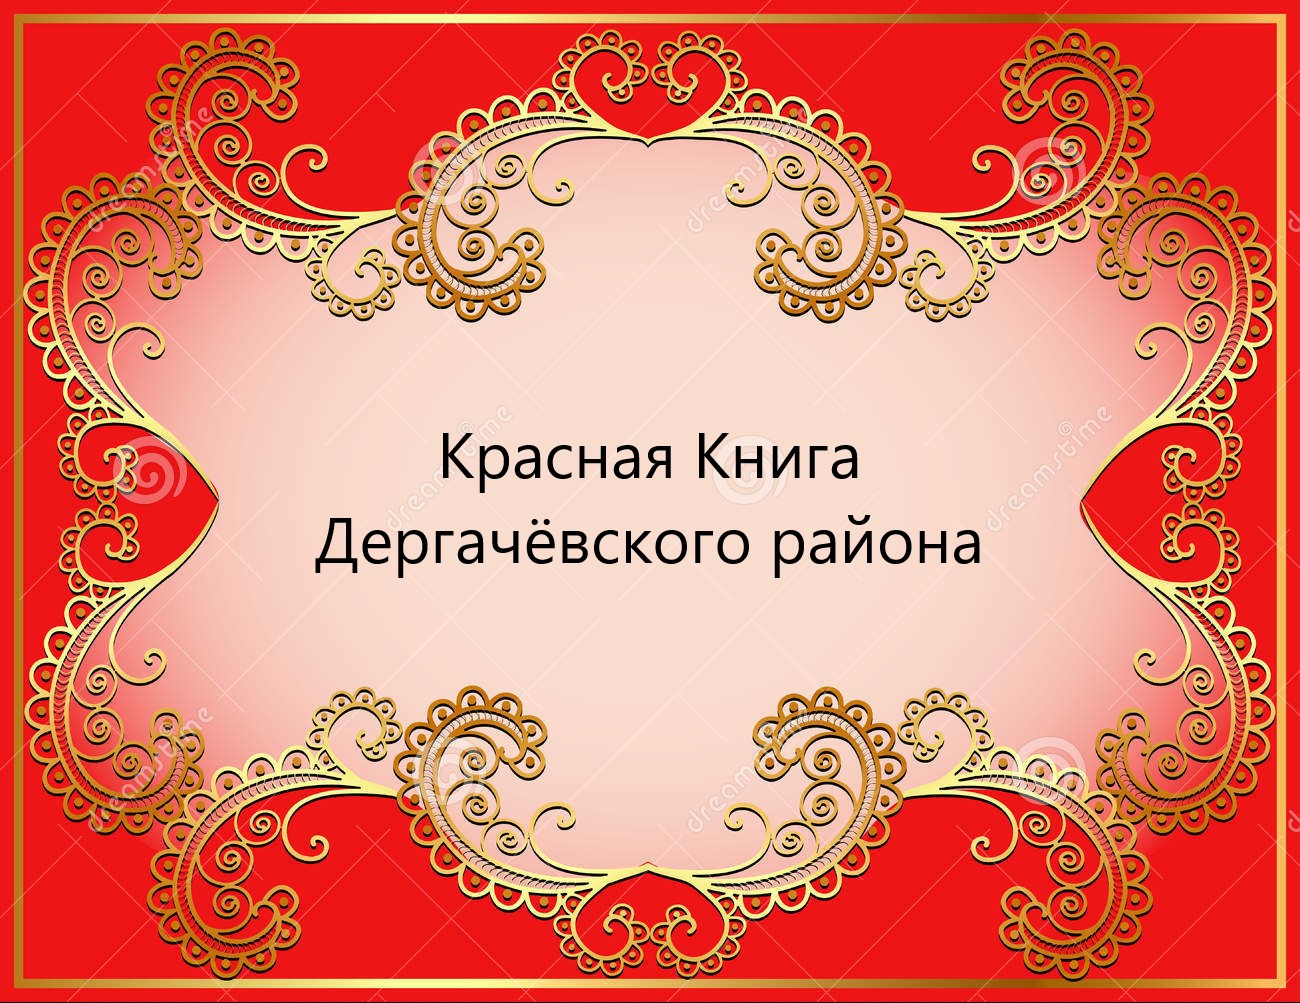 Красный фон с казахскими орнаментом